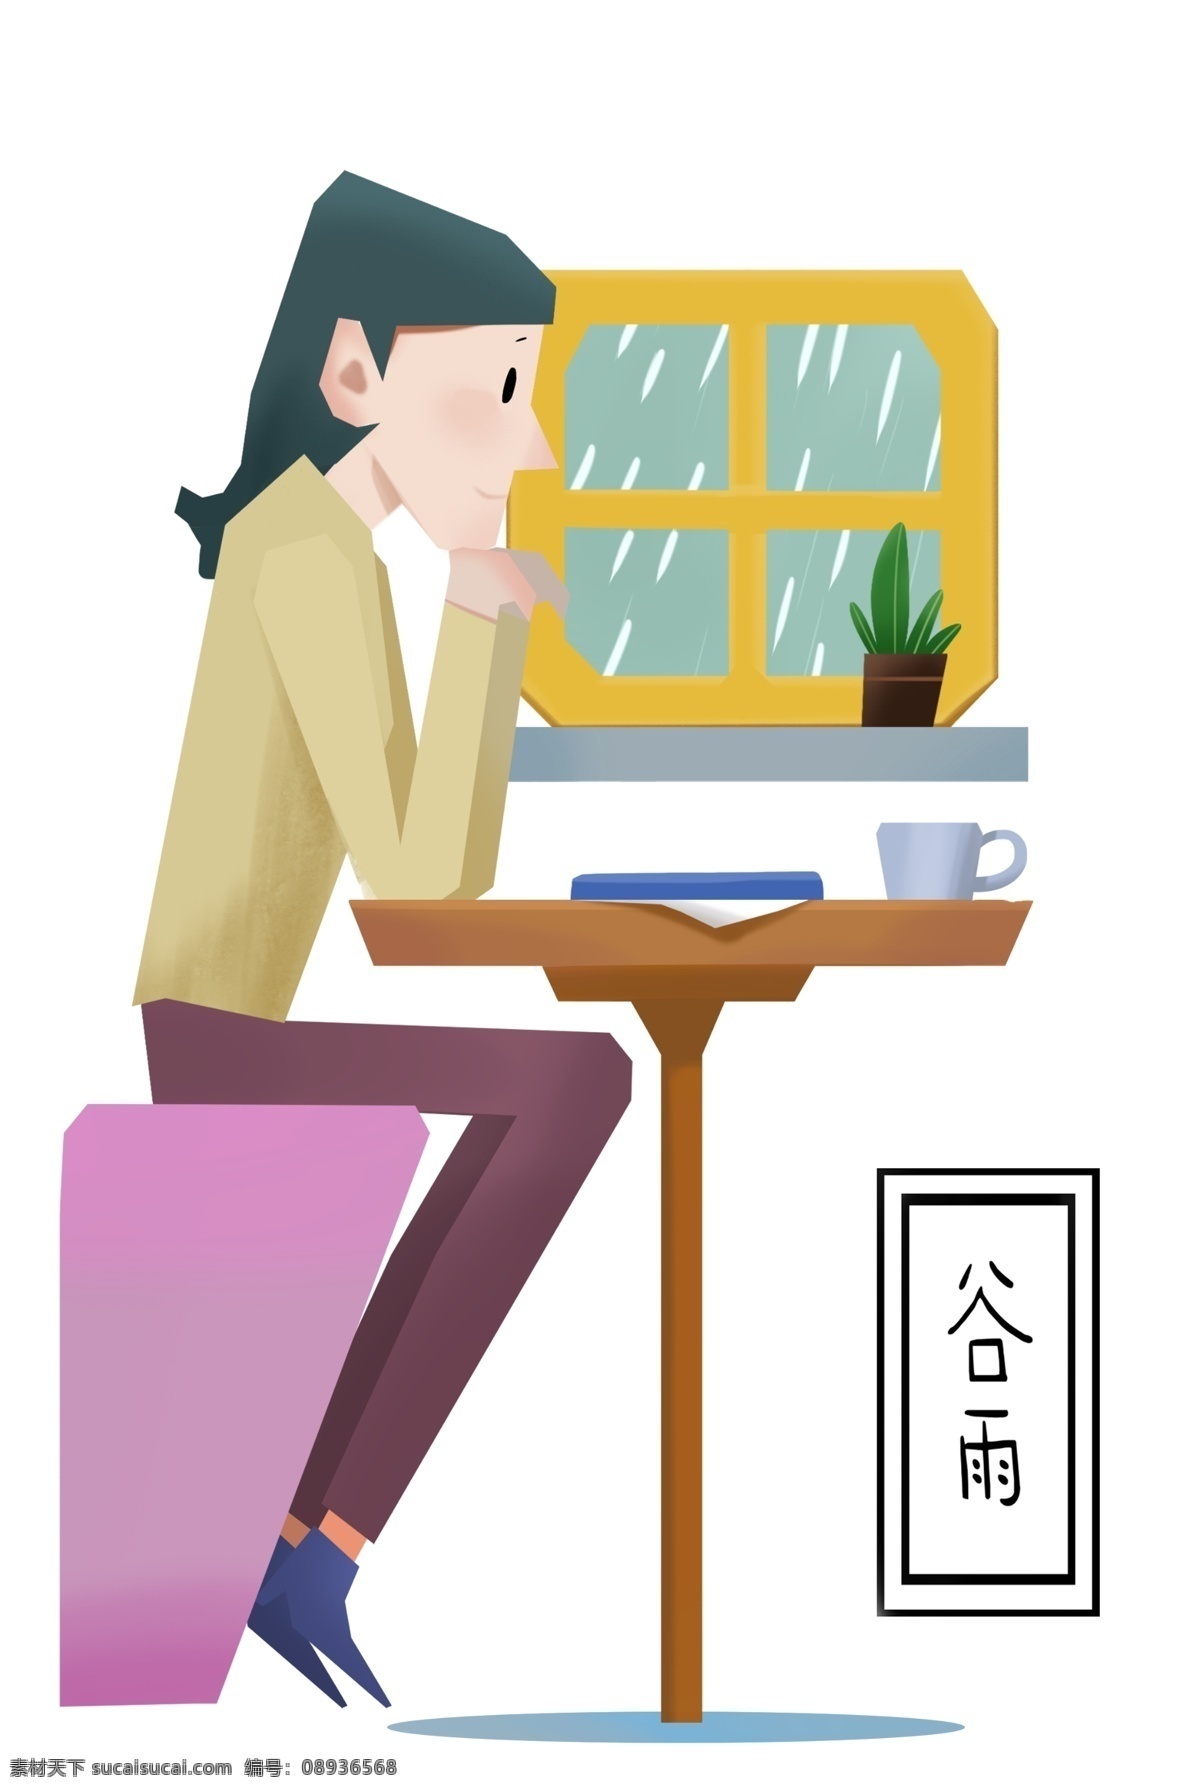 谷雨 女孩 咖啡厅 赏 雨 谷雨人物插画 下雨雨季节气 桌椅咖啡 植物盆栽 卡通的人物